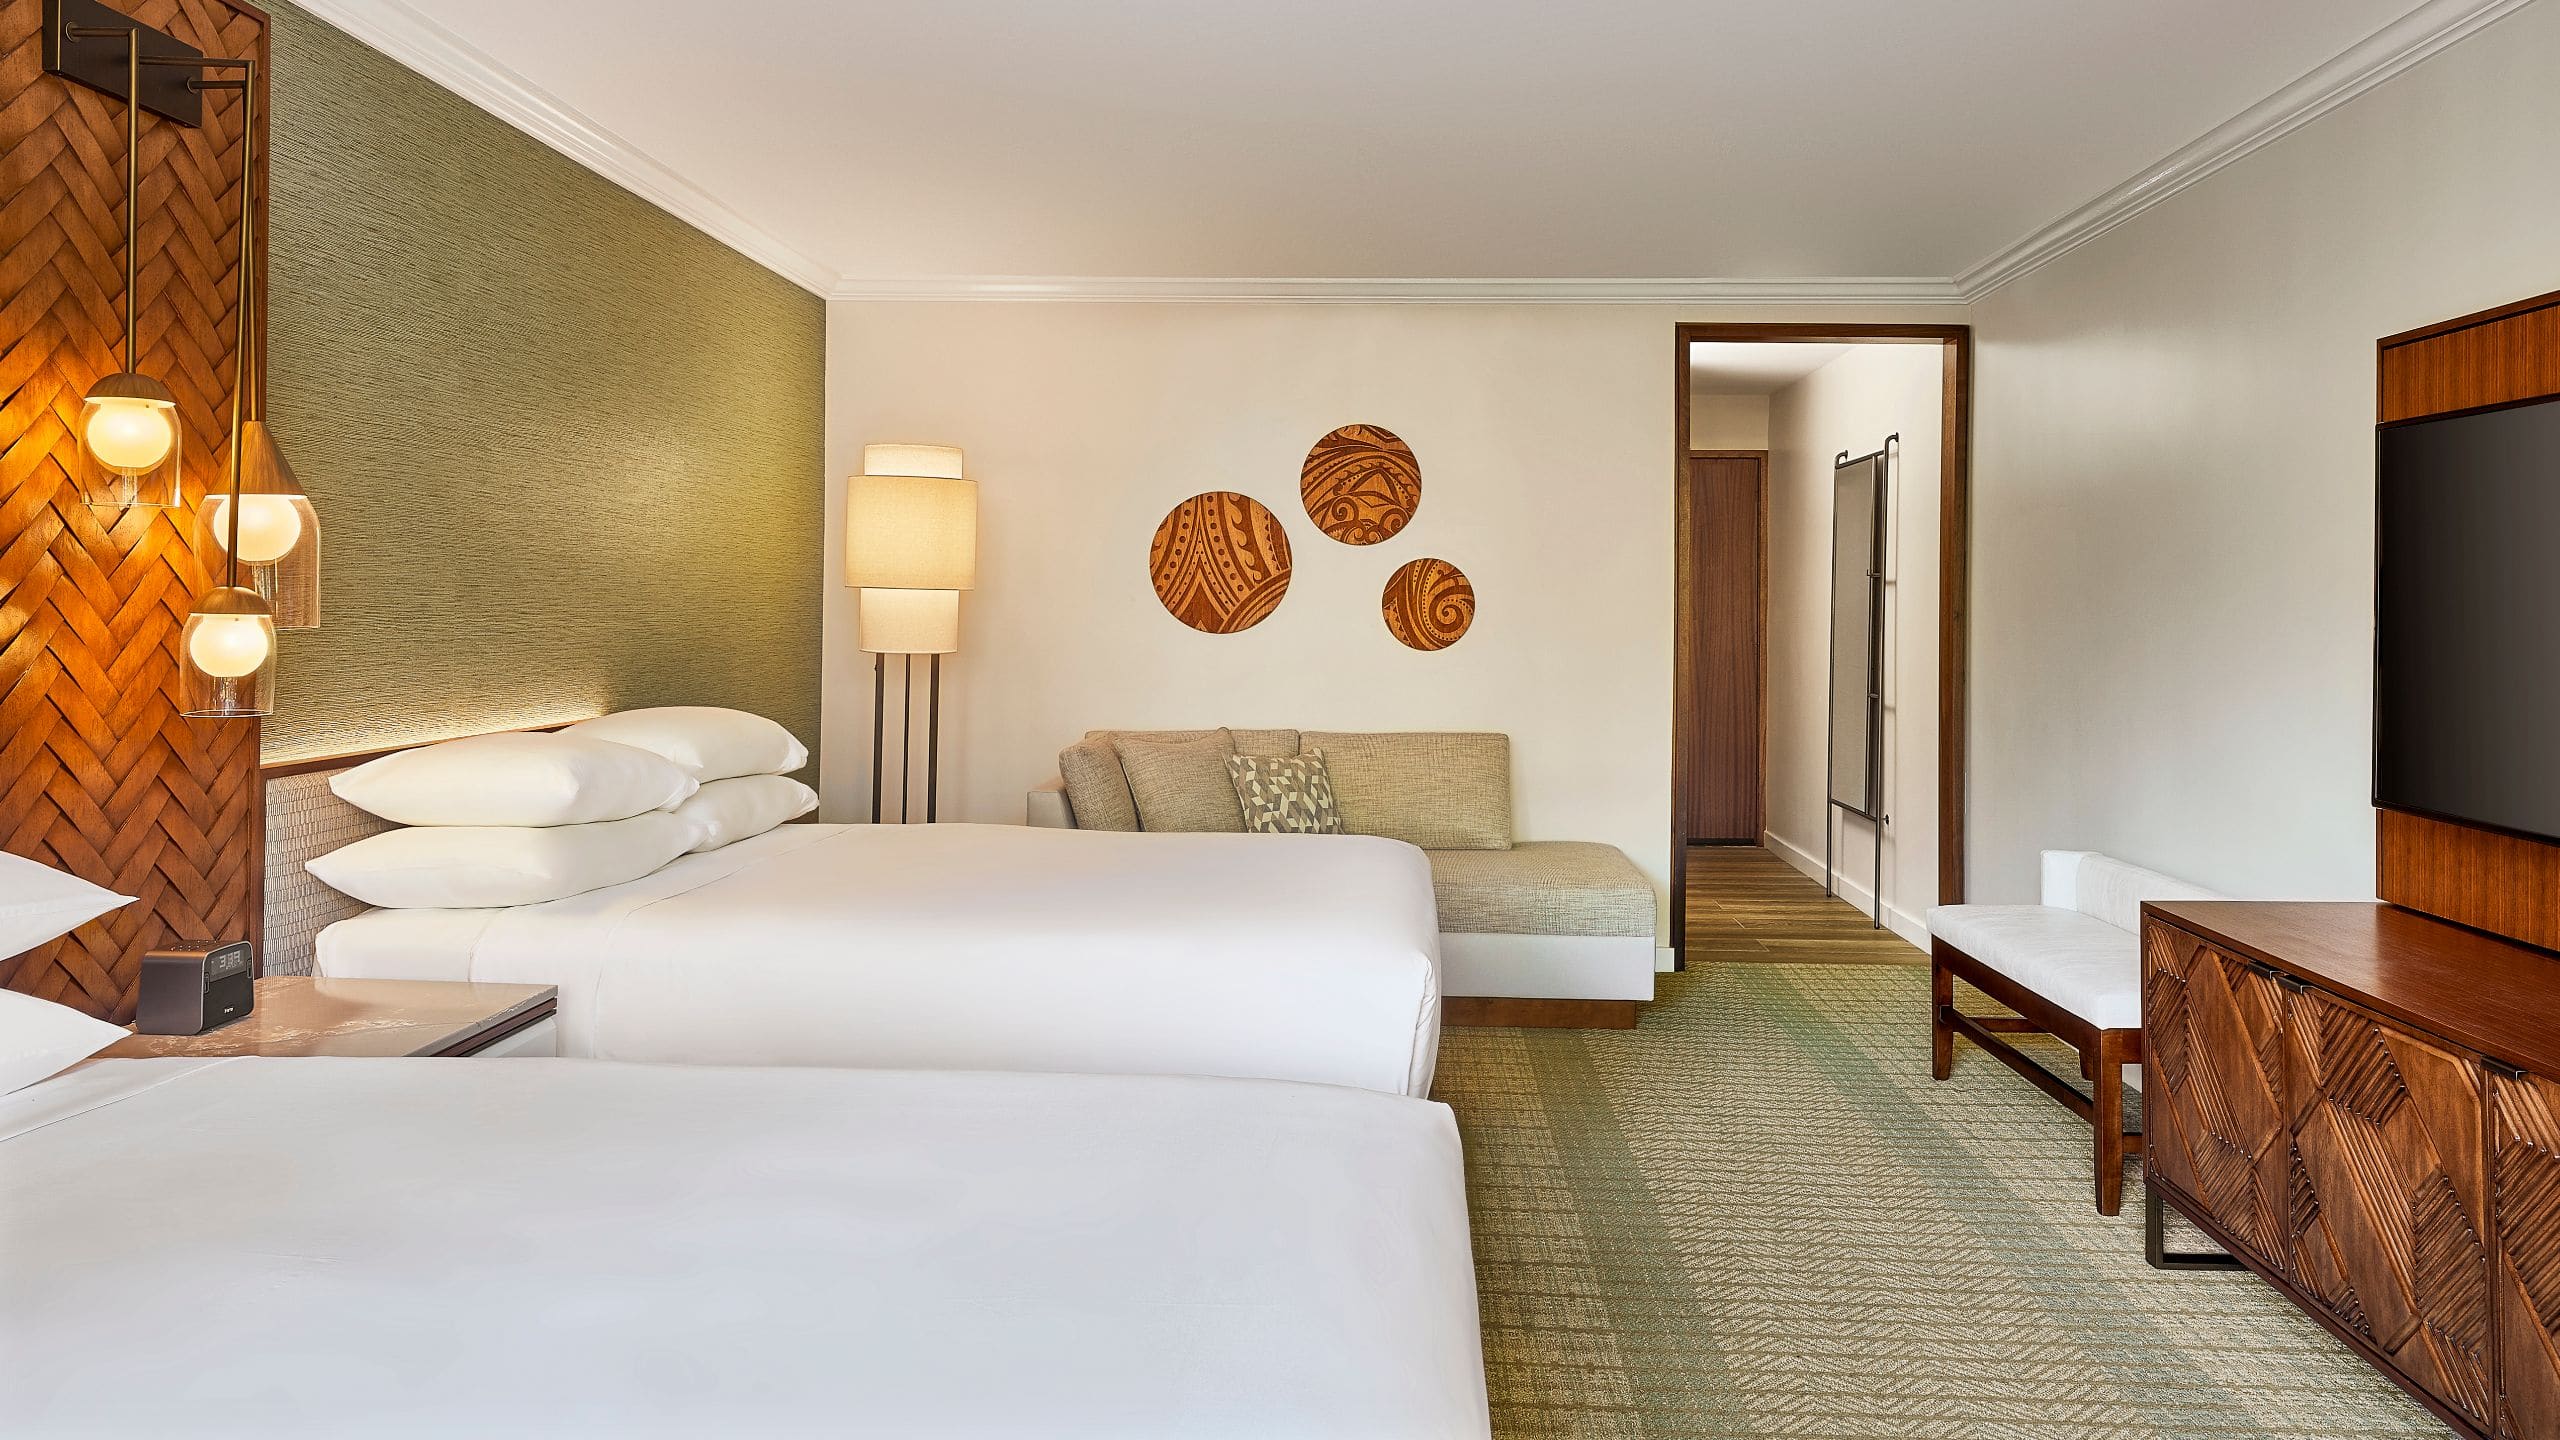 Hotel room inside Hyatt Regency Maui Resort and Spa